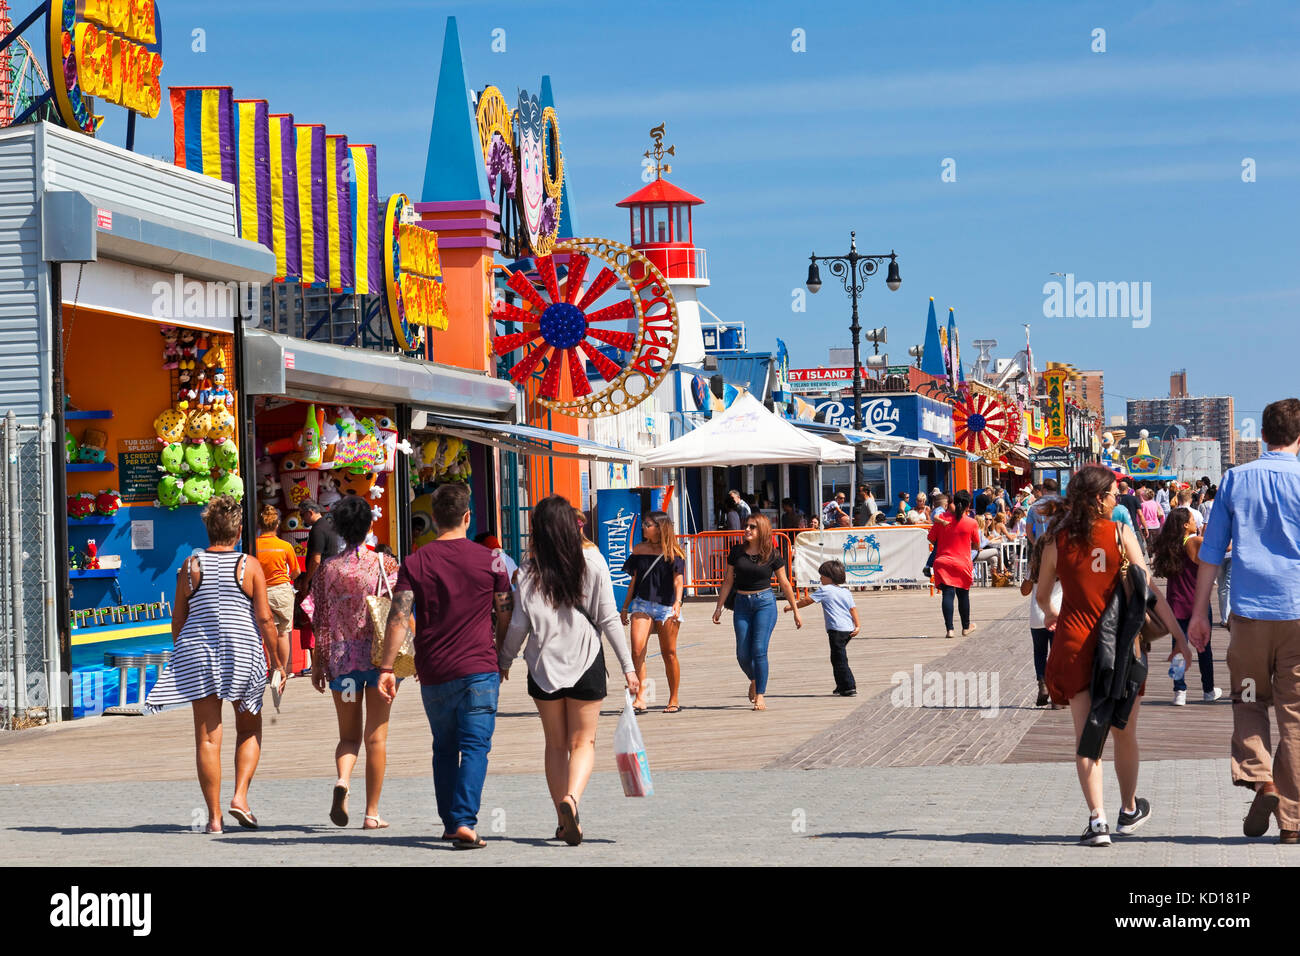 Communément appelé le Coney Island Boardwalk, le Reigelmann Boarkwalk étend 2,5 kilomètres le long de la rive sud de Coney Island et est bordée de manèges et attractions, Coney Island, Brooklyn, New York City, New York, U.S.A. Banque D'Images